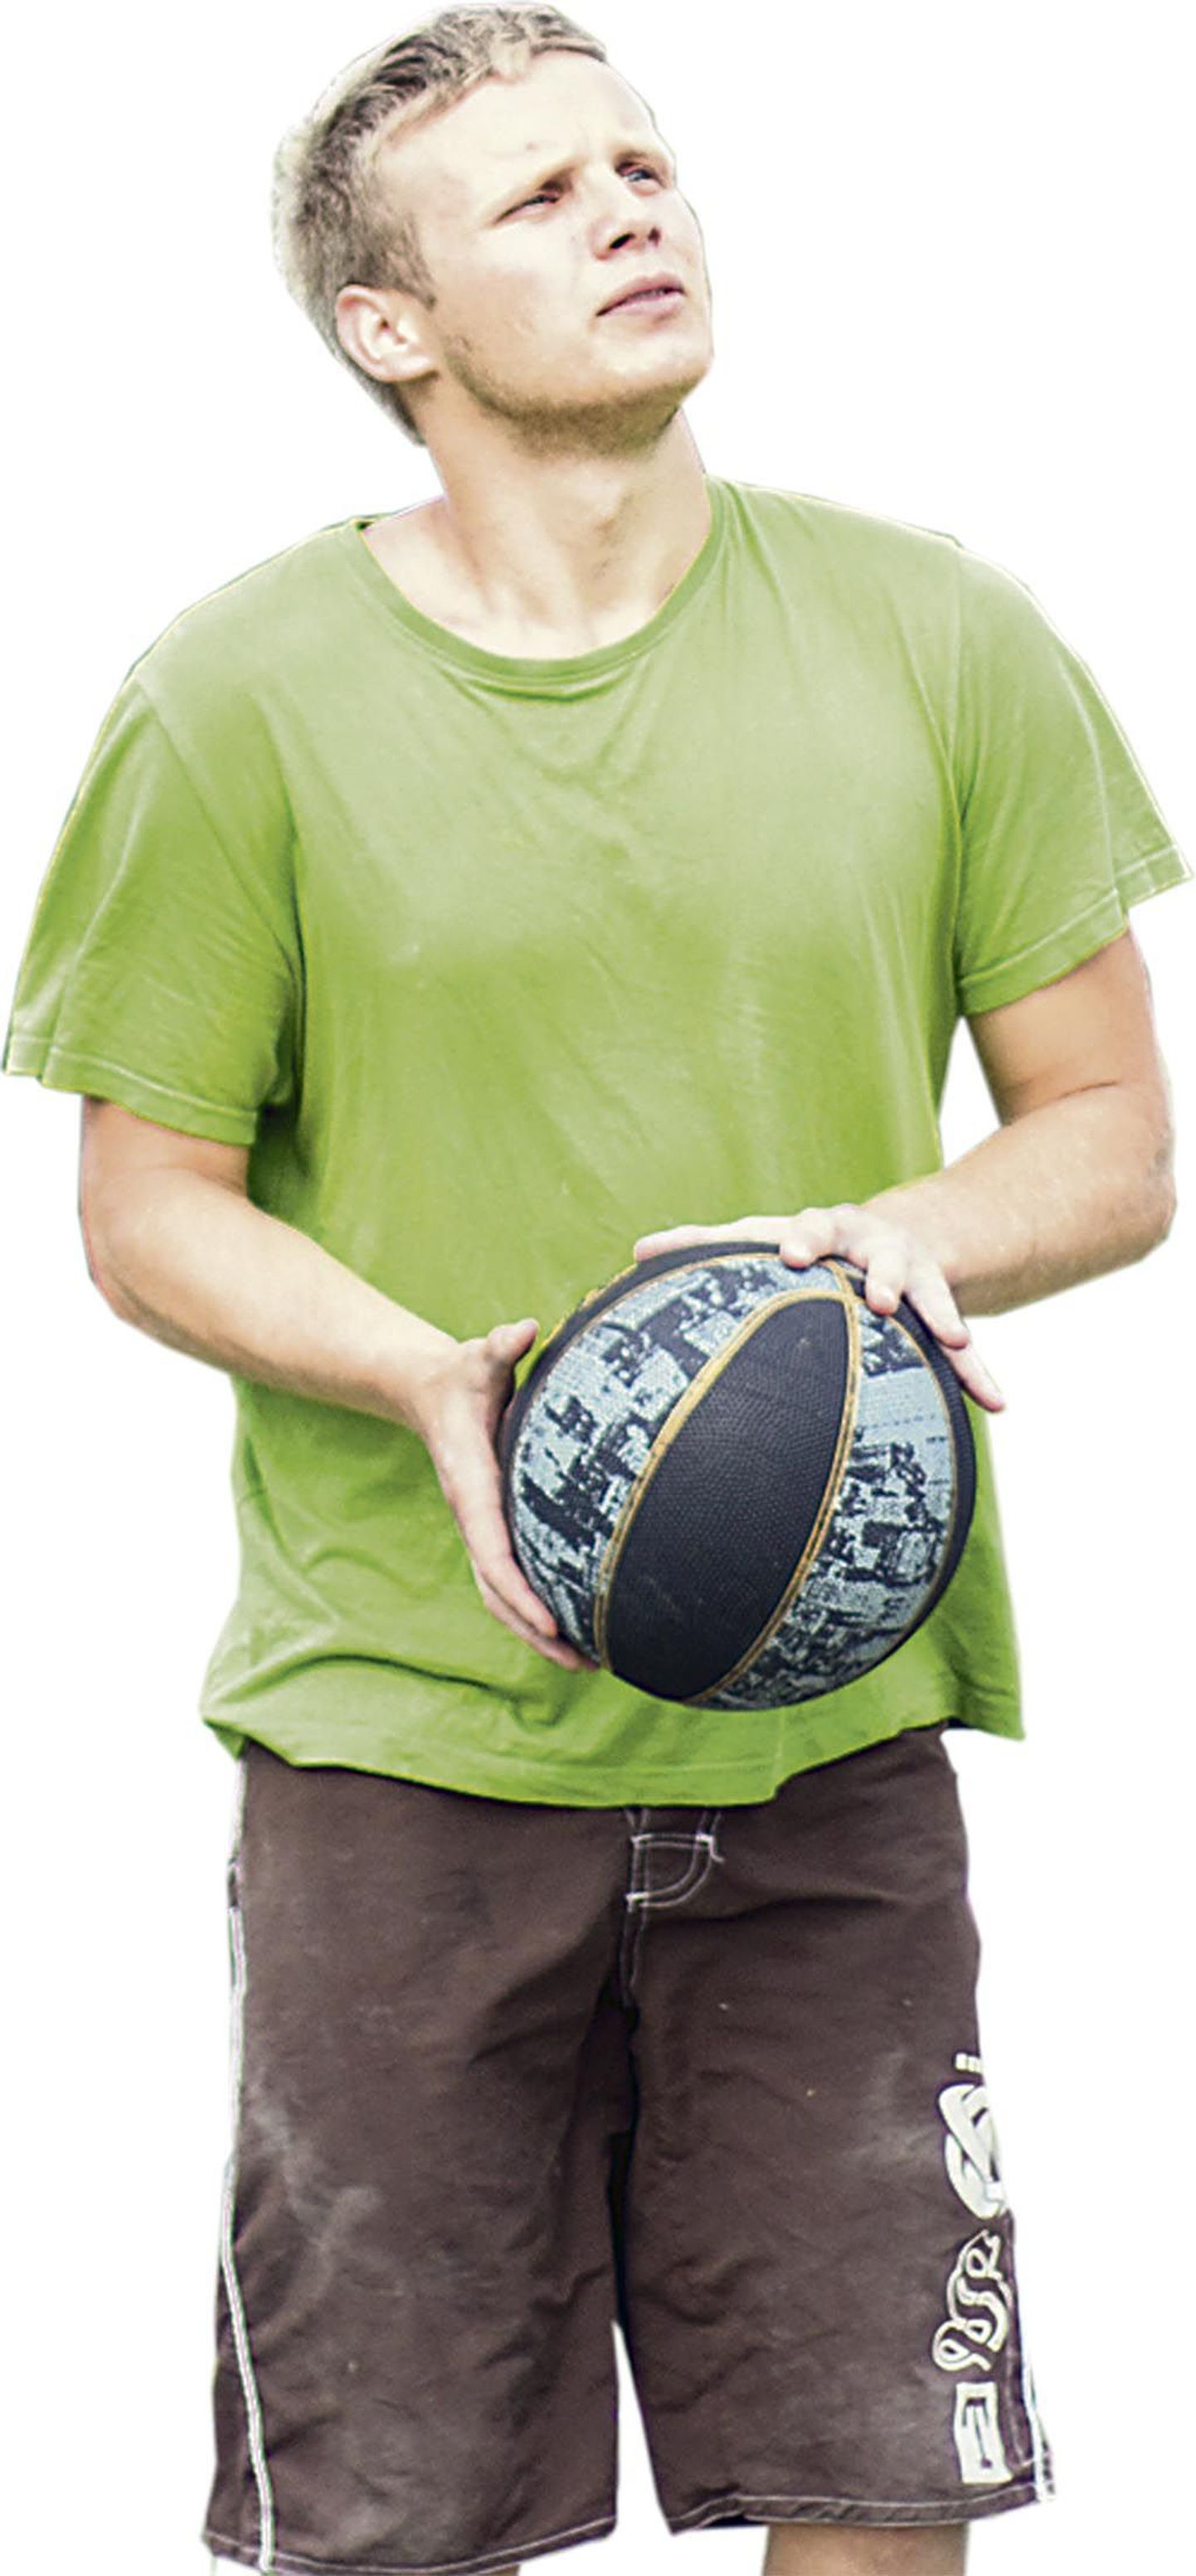 Kuigi Arvo Sõerd treenib põhiliselt Toris, on Seljalgi korralik korvpalliväljak, mida kasutab külarahvas.